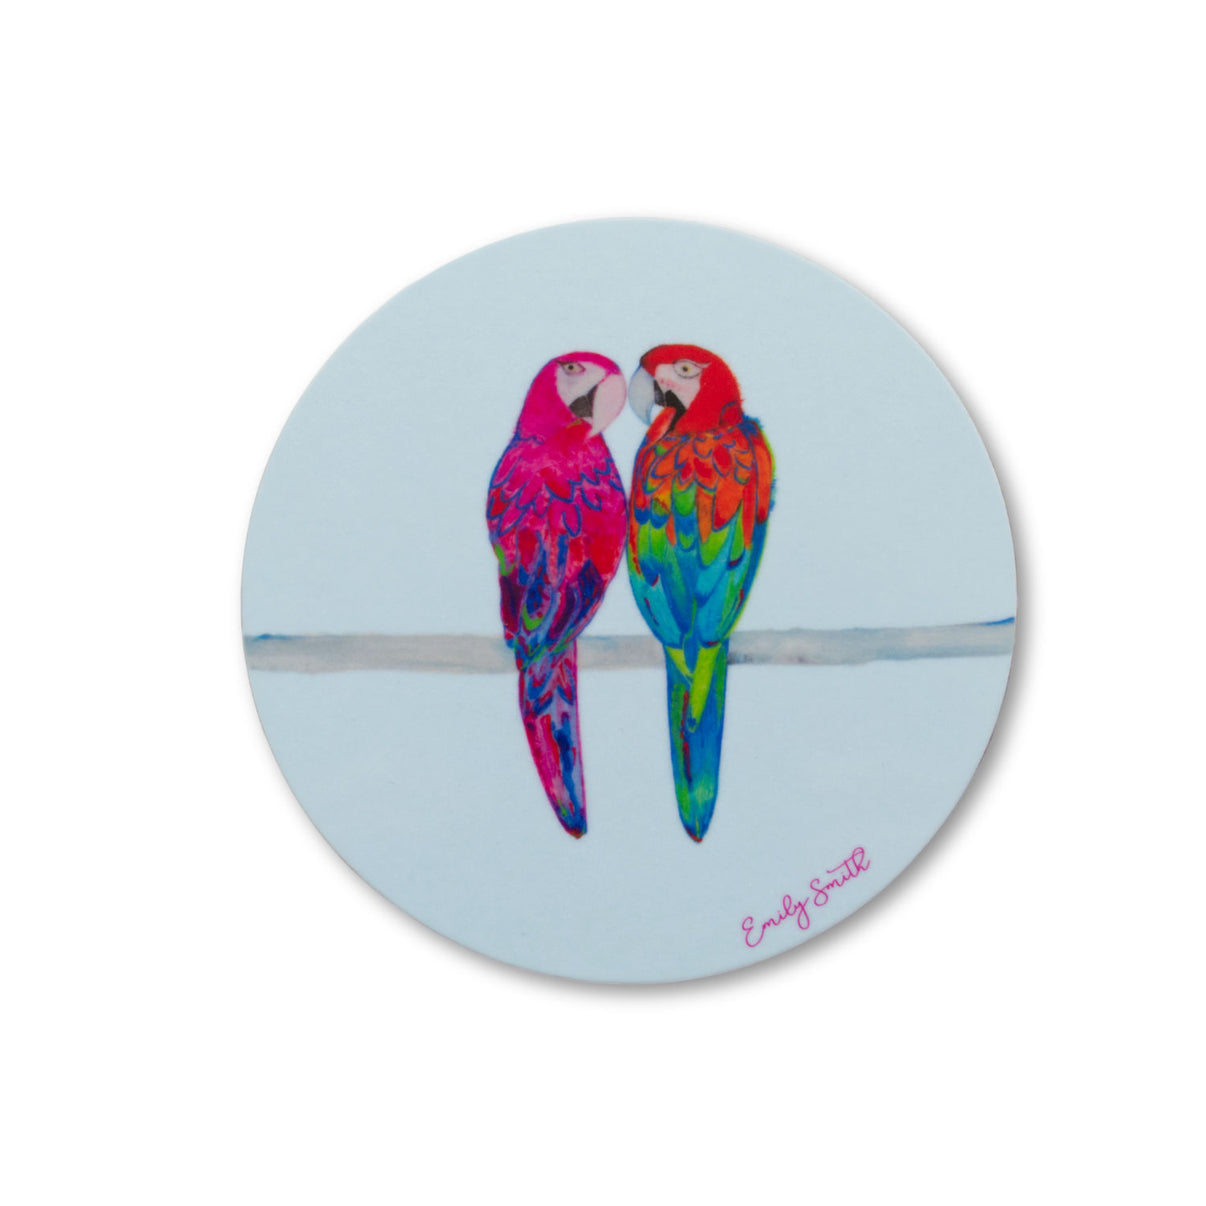 Emily Smith Coaster - Parrots